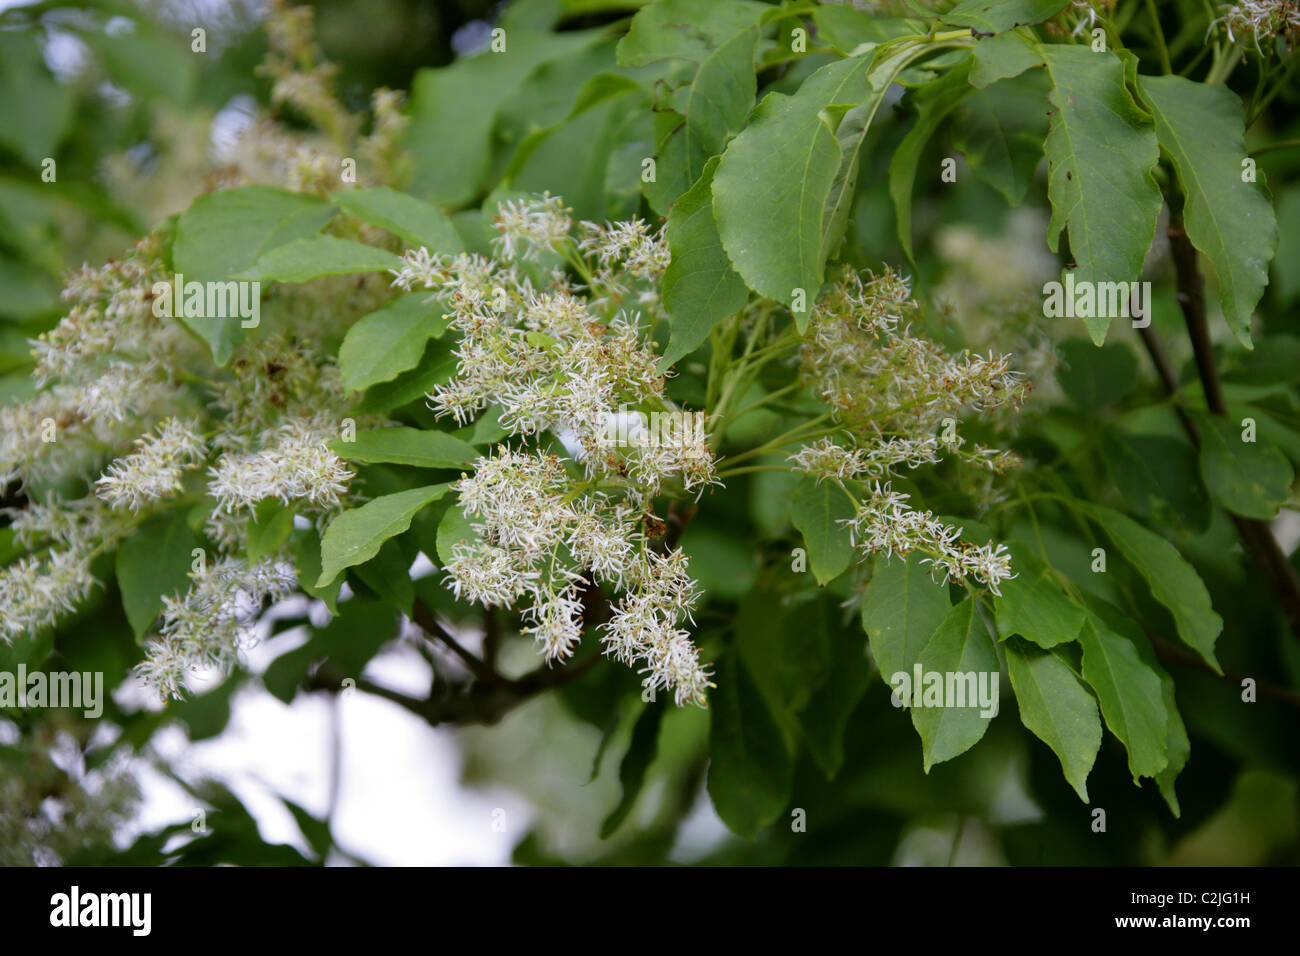 Arbre du ciel, Ailanthus altissima, Simaroubaceae. Au nord-est et le centre de la Chine et Taïwan. Banque D'Images